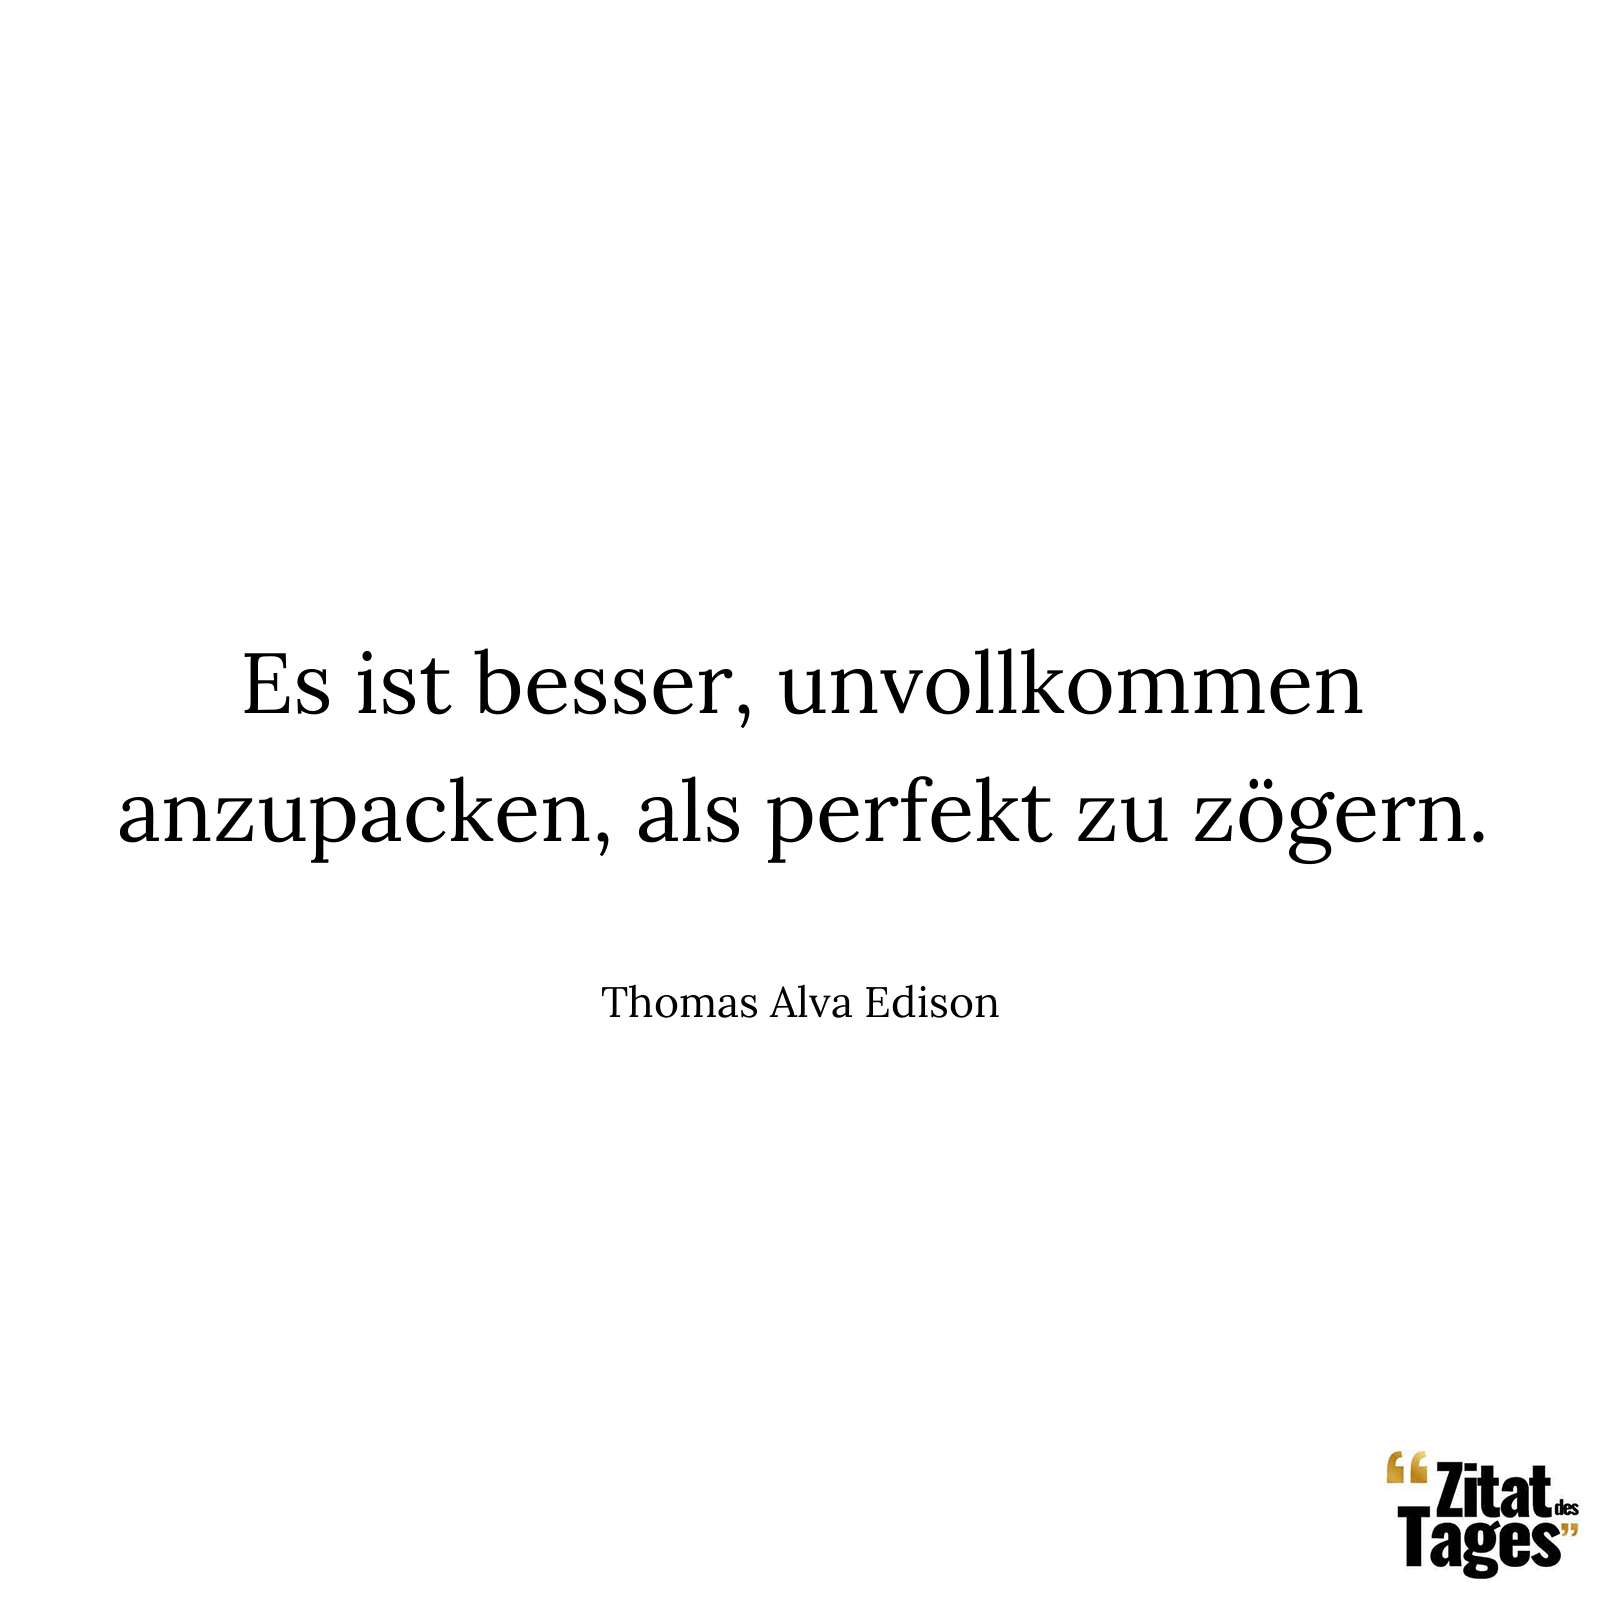 Es ist besser, unvollkommen anzupacken, als perfekt zu zögern. - Thomas Alva Edison